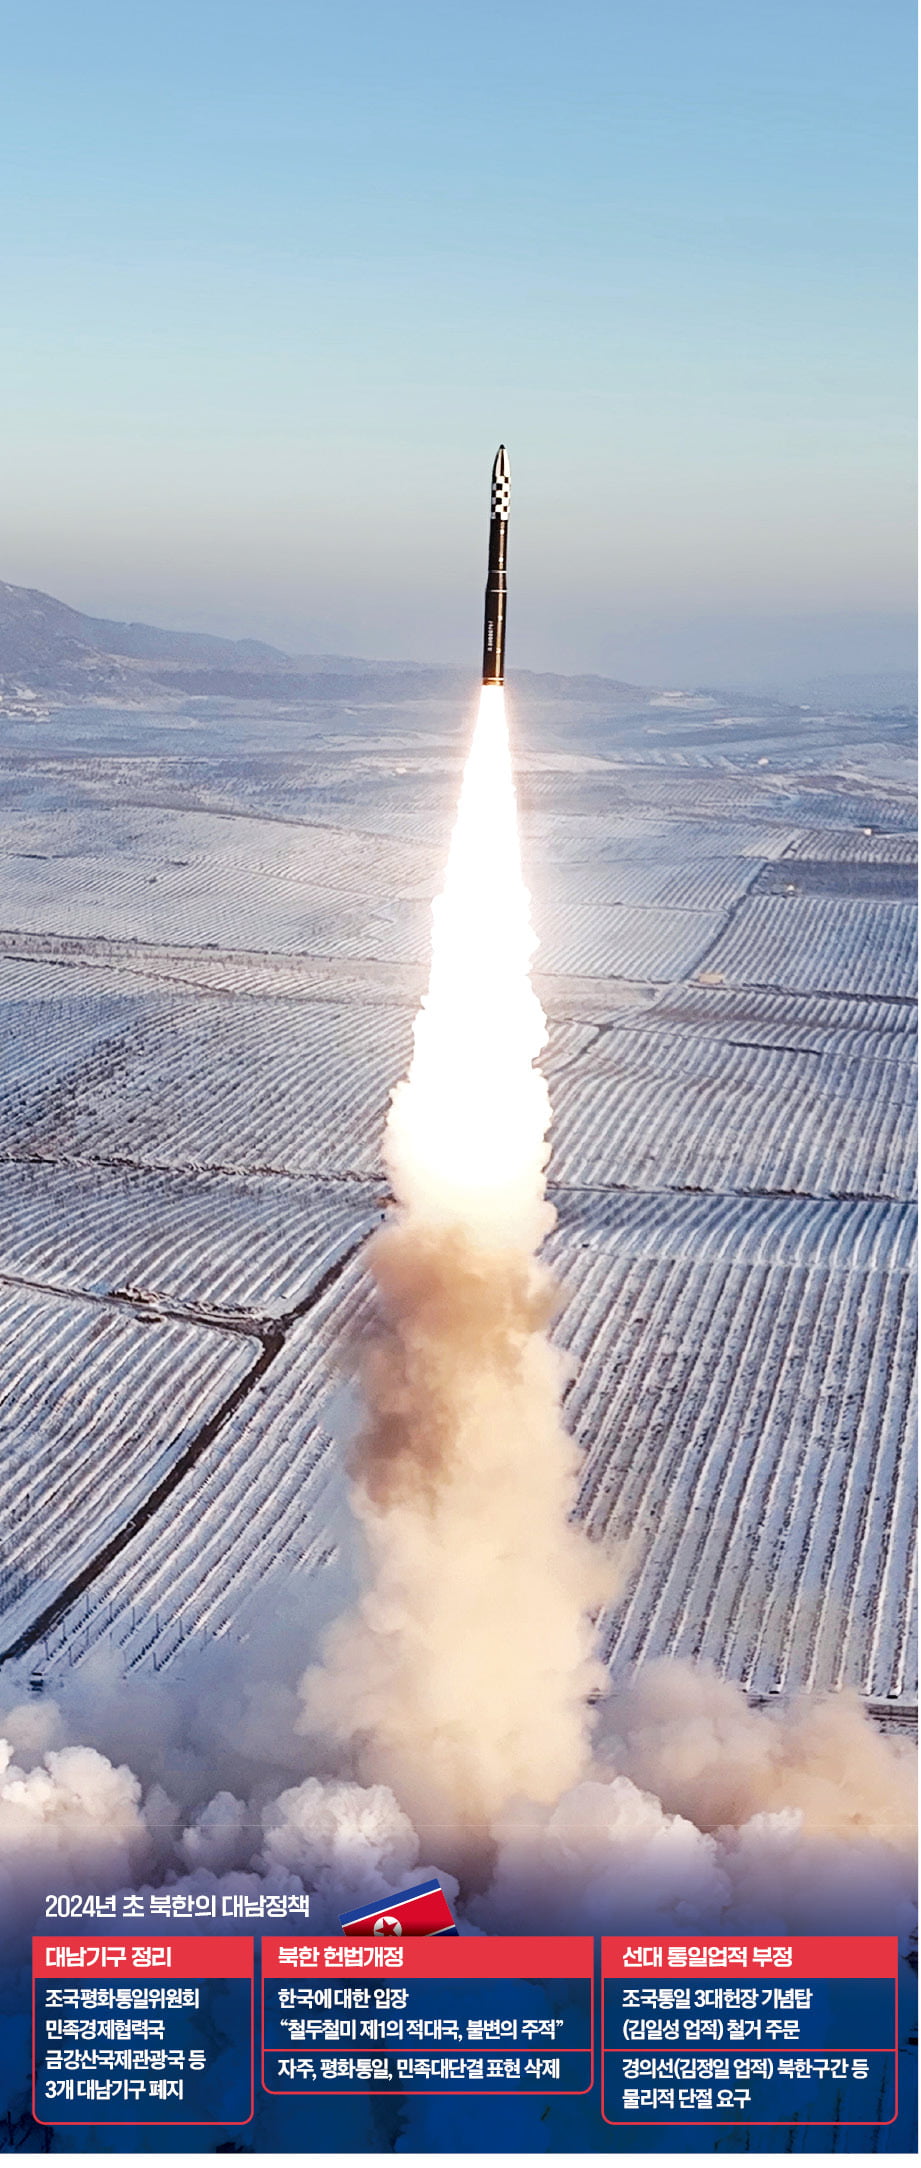 북한은 작년 말부터 대륙간탄도미사일(ICBM) 발사, 서해 해안포 사격, 극초음속 탄도미사일 발사 등 다양한 형태의 군사 도발을 하고 있다. 북한이 지난해 12월 평양 일대에서 동해 상으로 신형 고체연료 ICBM '화성-18형'을 발사하는 모습.  /조선중앙통신 